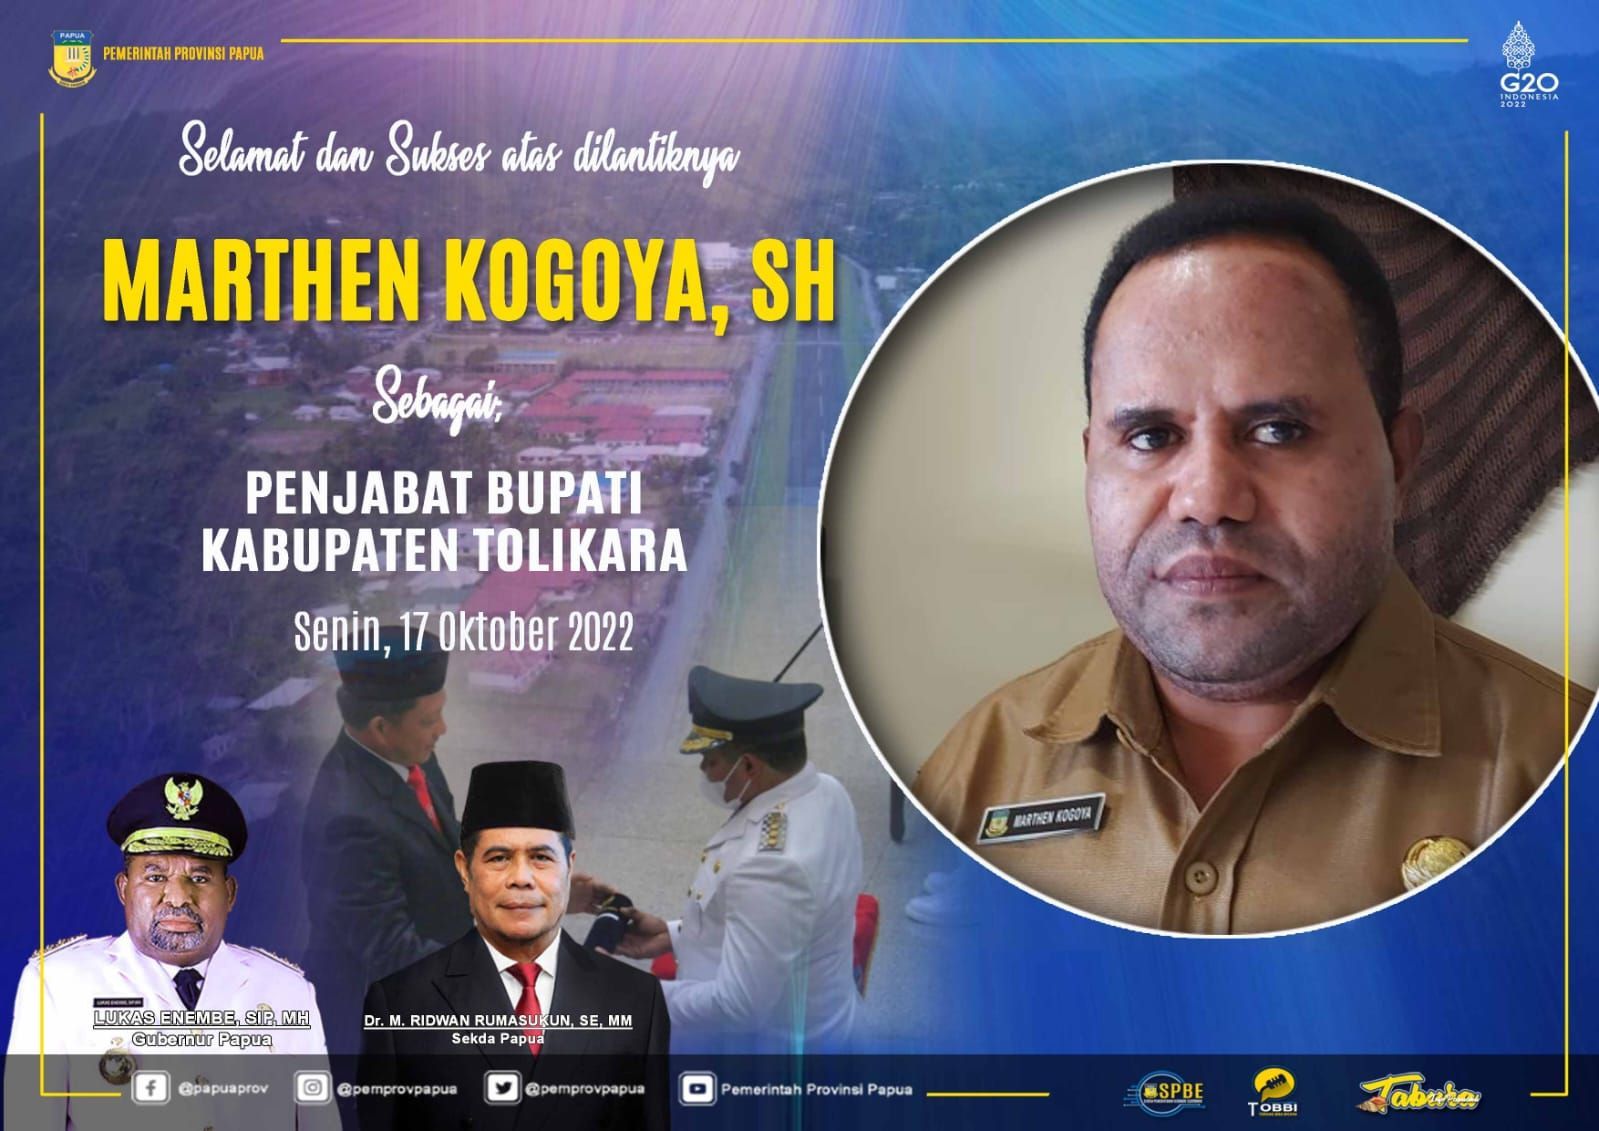 Selamat dan Sukses Atas Dilantiknya Bpk. Marthen Kogoya, SH Sebagai Pj. Bupati Tolikara, Senin 17 Oktober 2022.